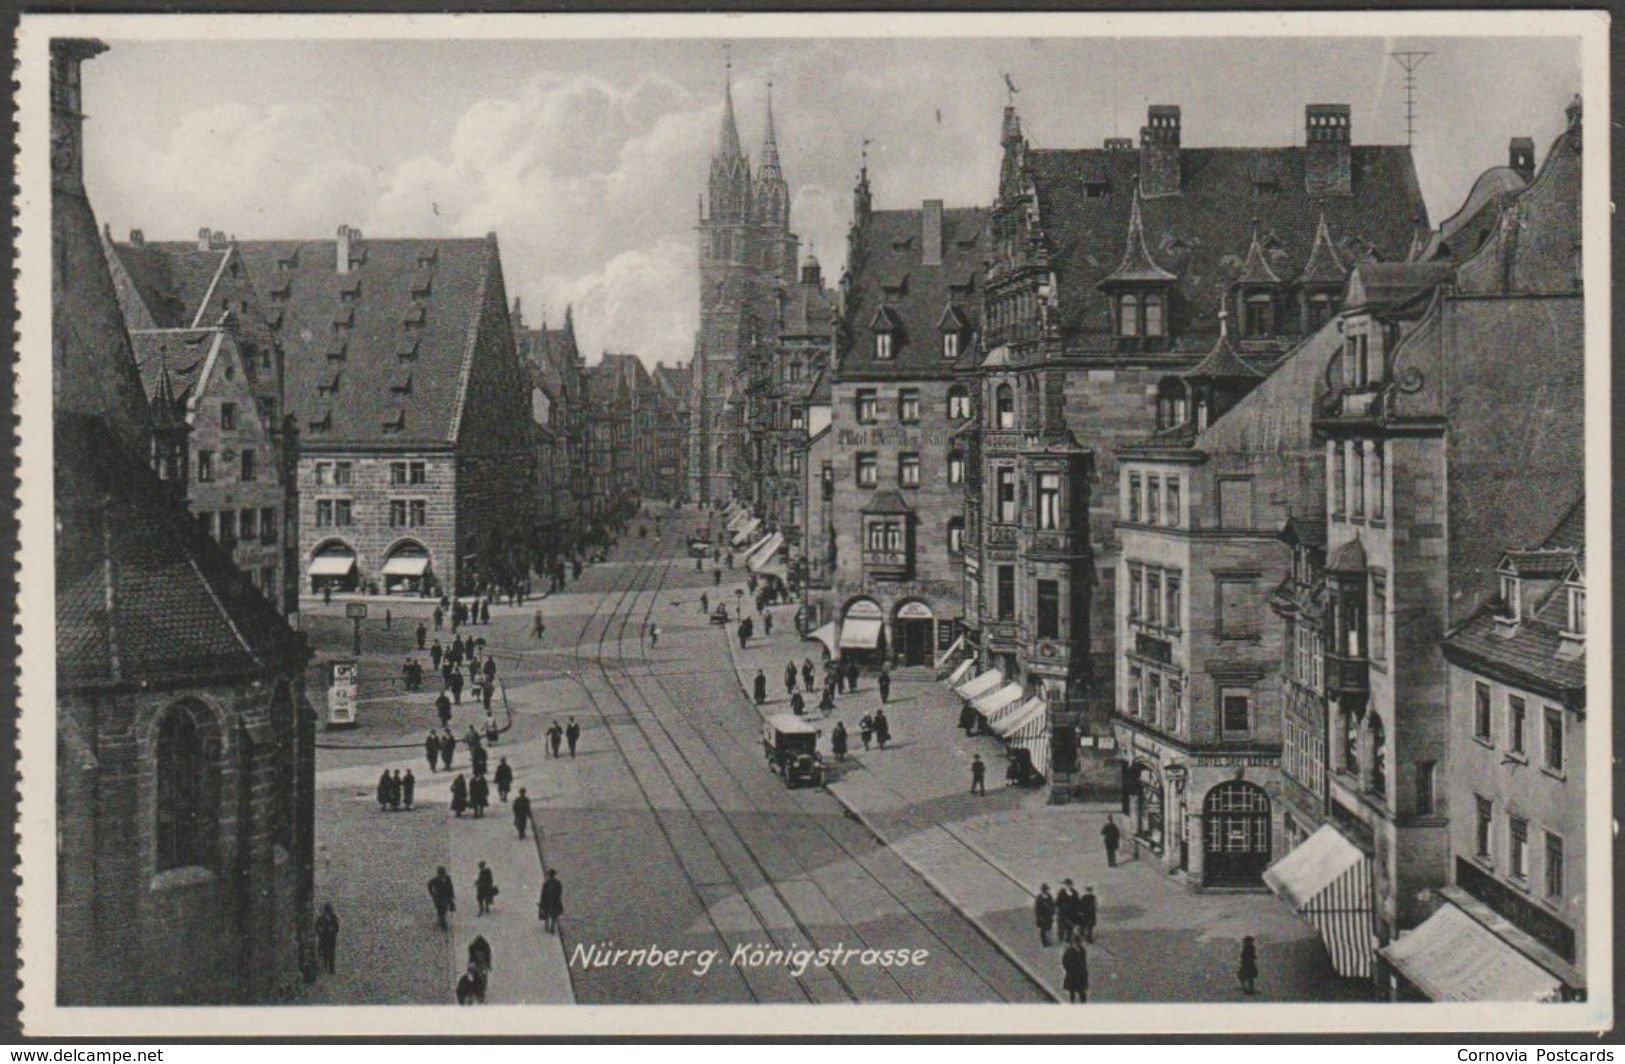 Nuernberg - Königstrasse, Riffelmacher c.1930s Nürnberg, Ludwig - AK